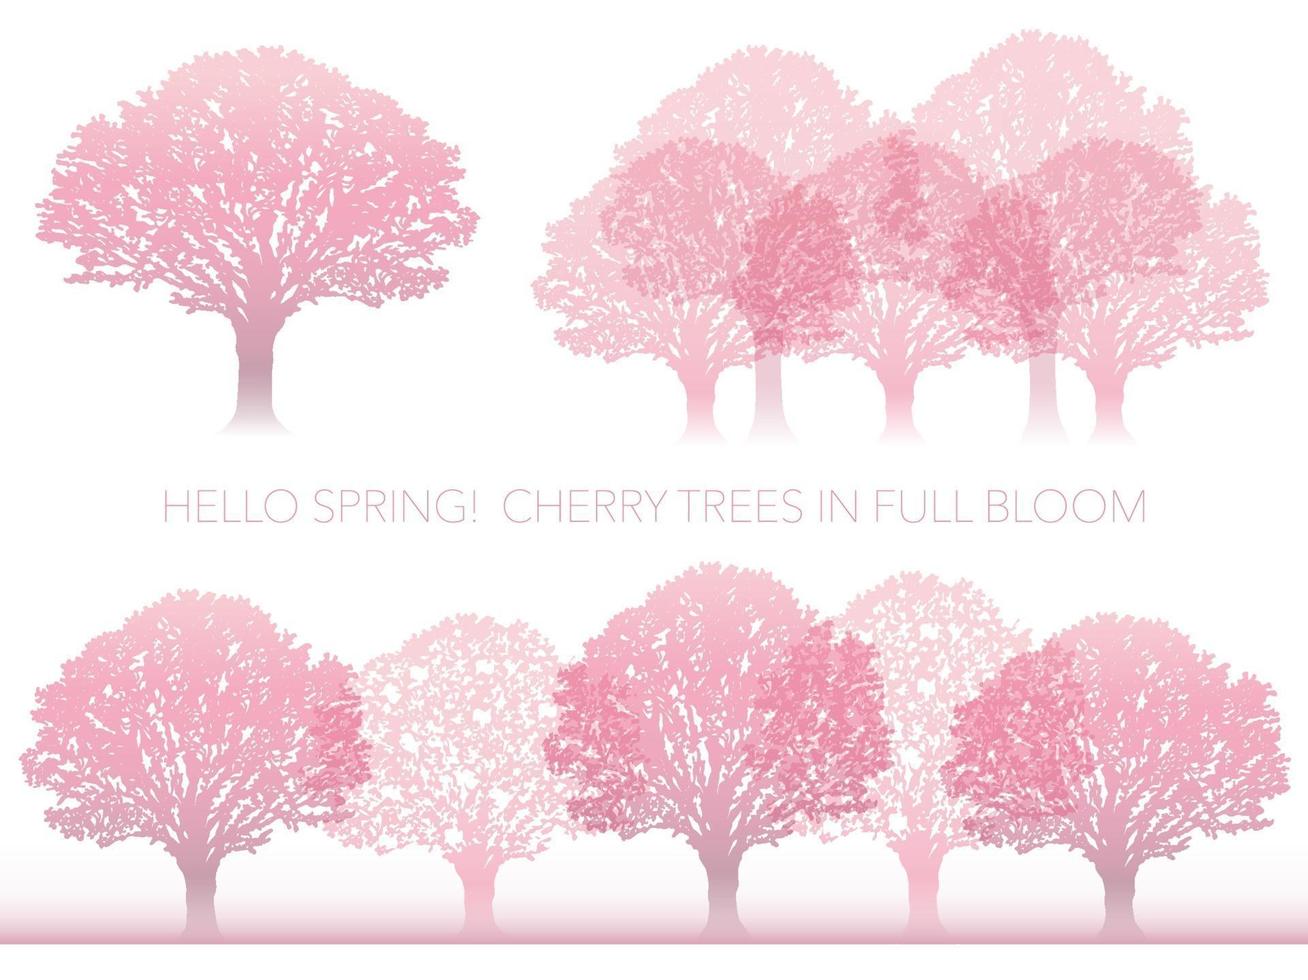 conjunto de árboles de cerezo de vector en plena floración aislado sobre un fondo blanco.